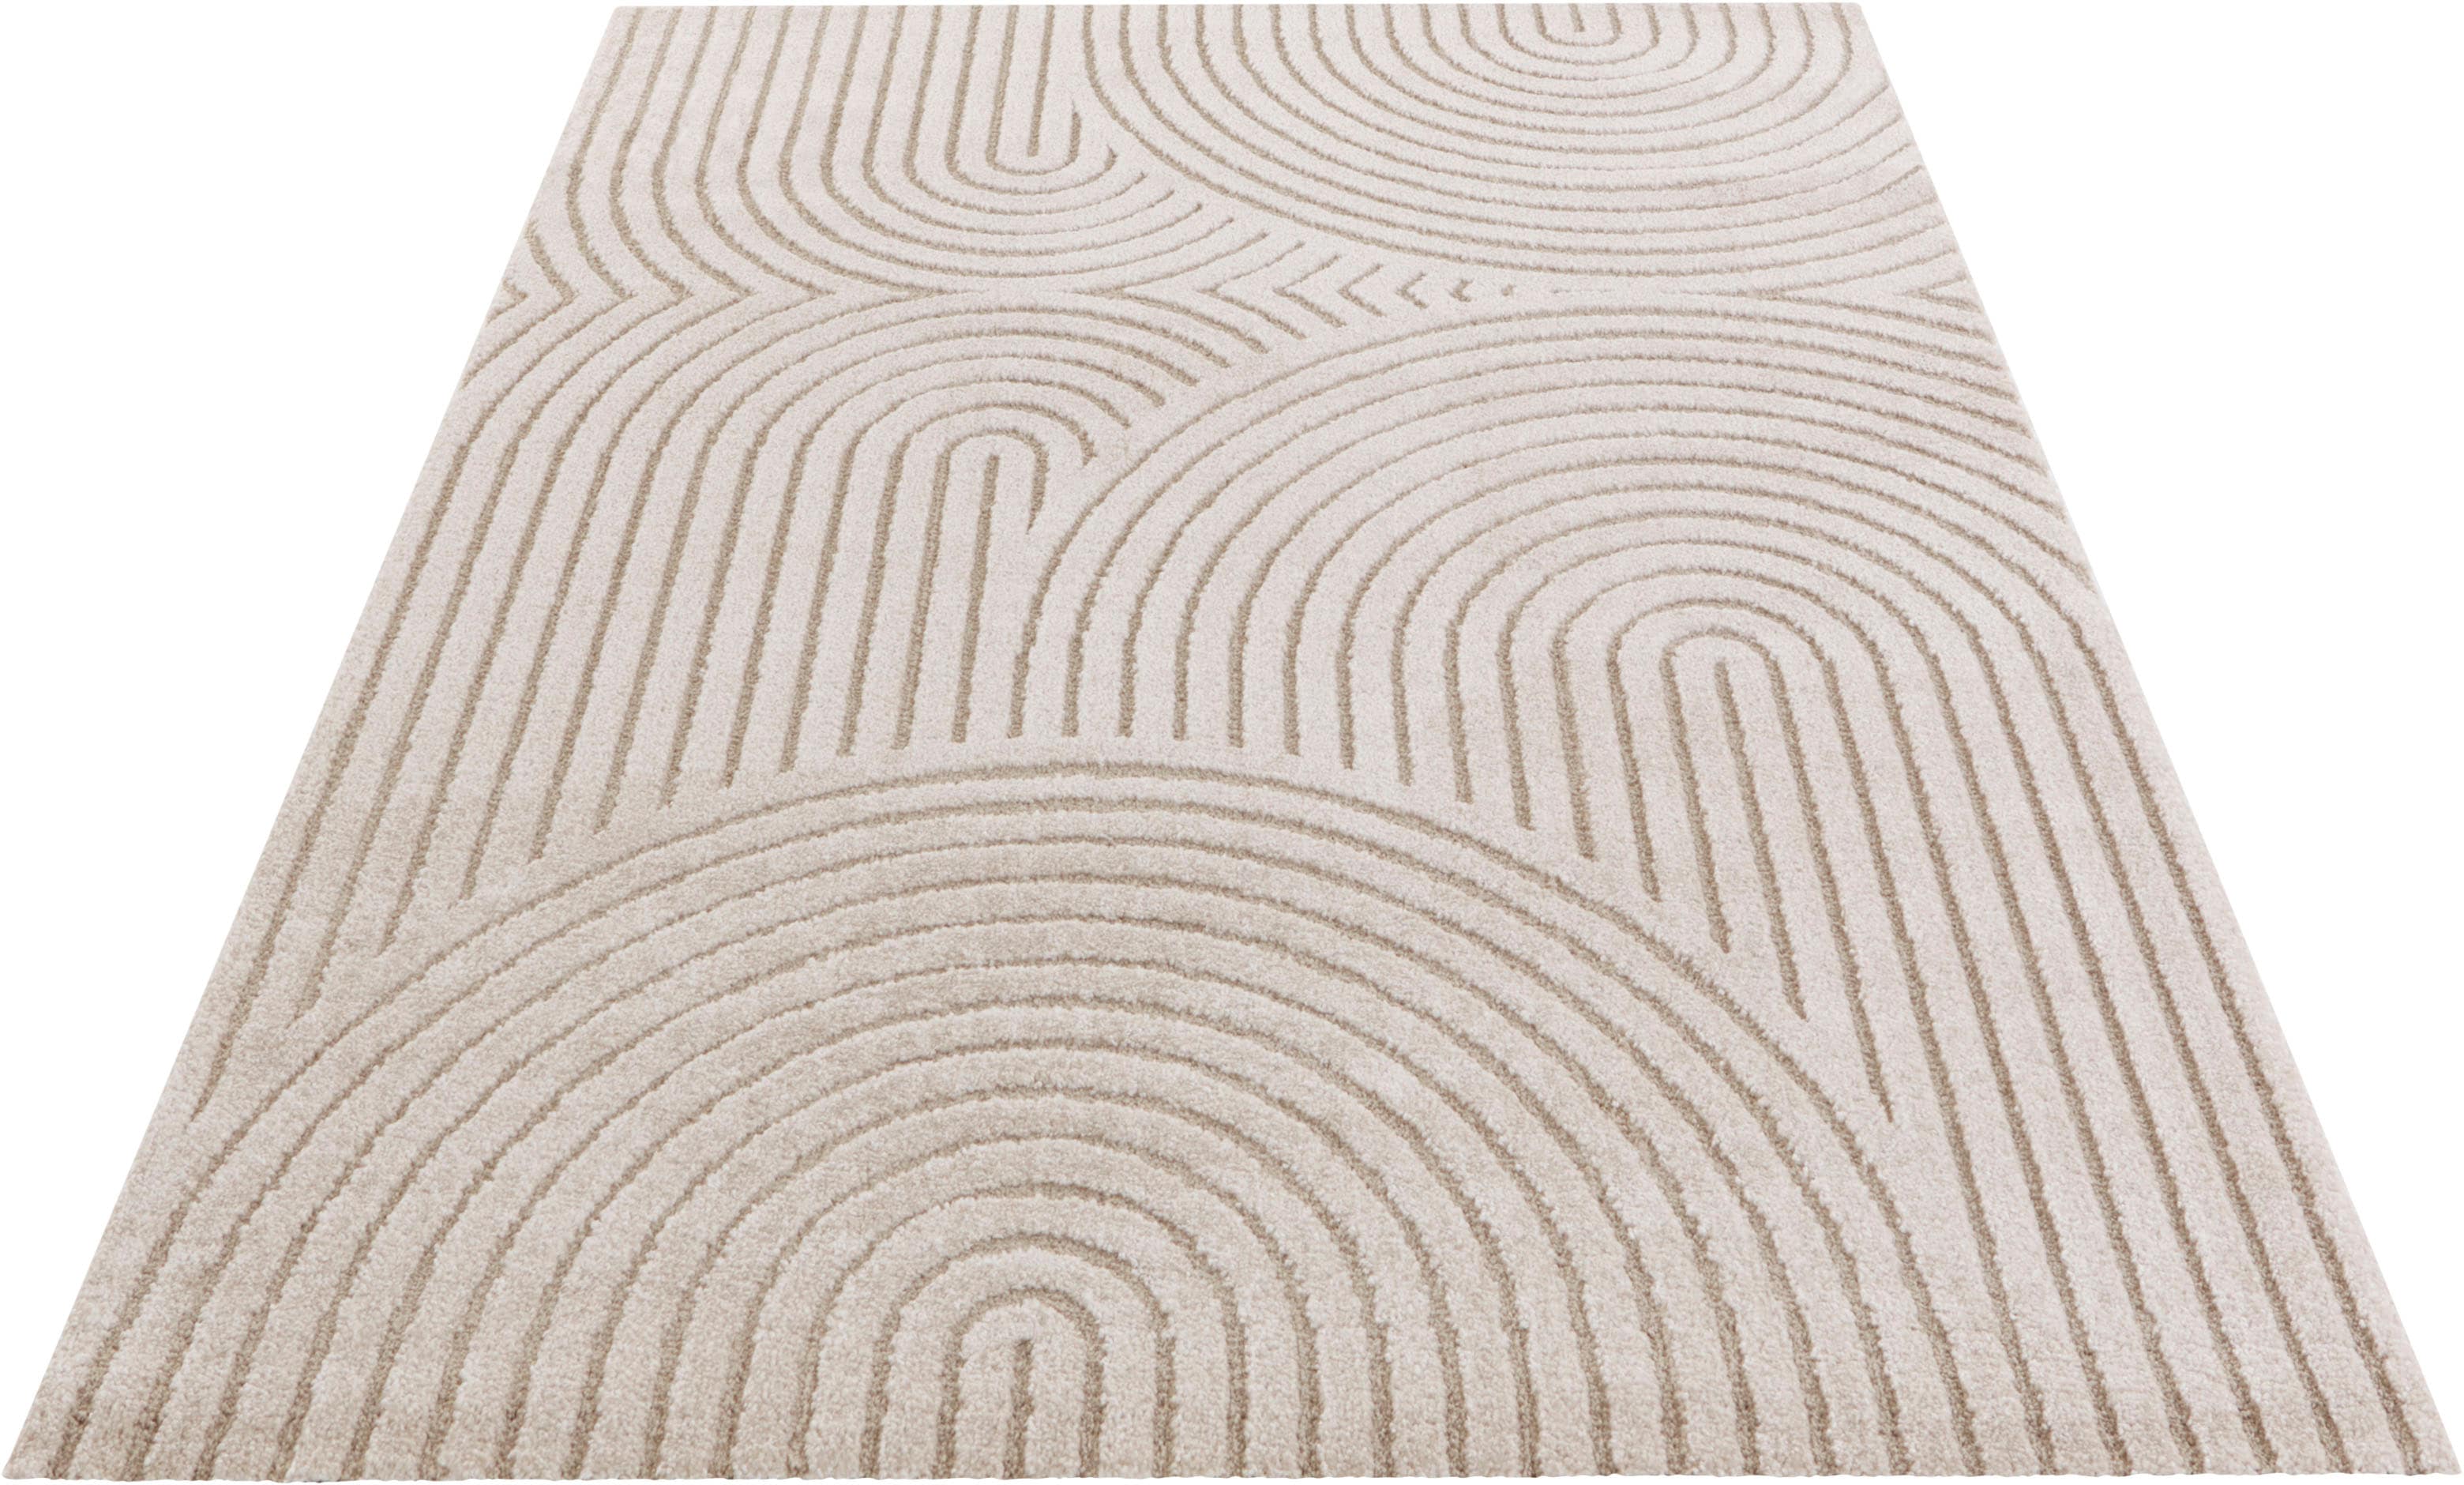 Panglao Flauschiger Kurzflor Teppich Moderner Wohnzimmerteppich – Hoch Tief Effekt Weich Grafisches Muster - für Wohnzimmer Schlafzimmer Küche oder Esszimmer Creme Beige, 80x150cm